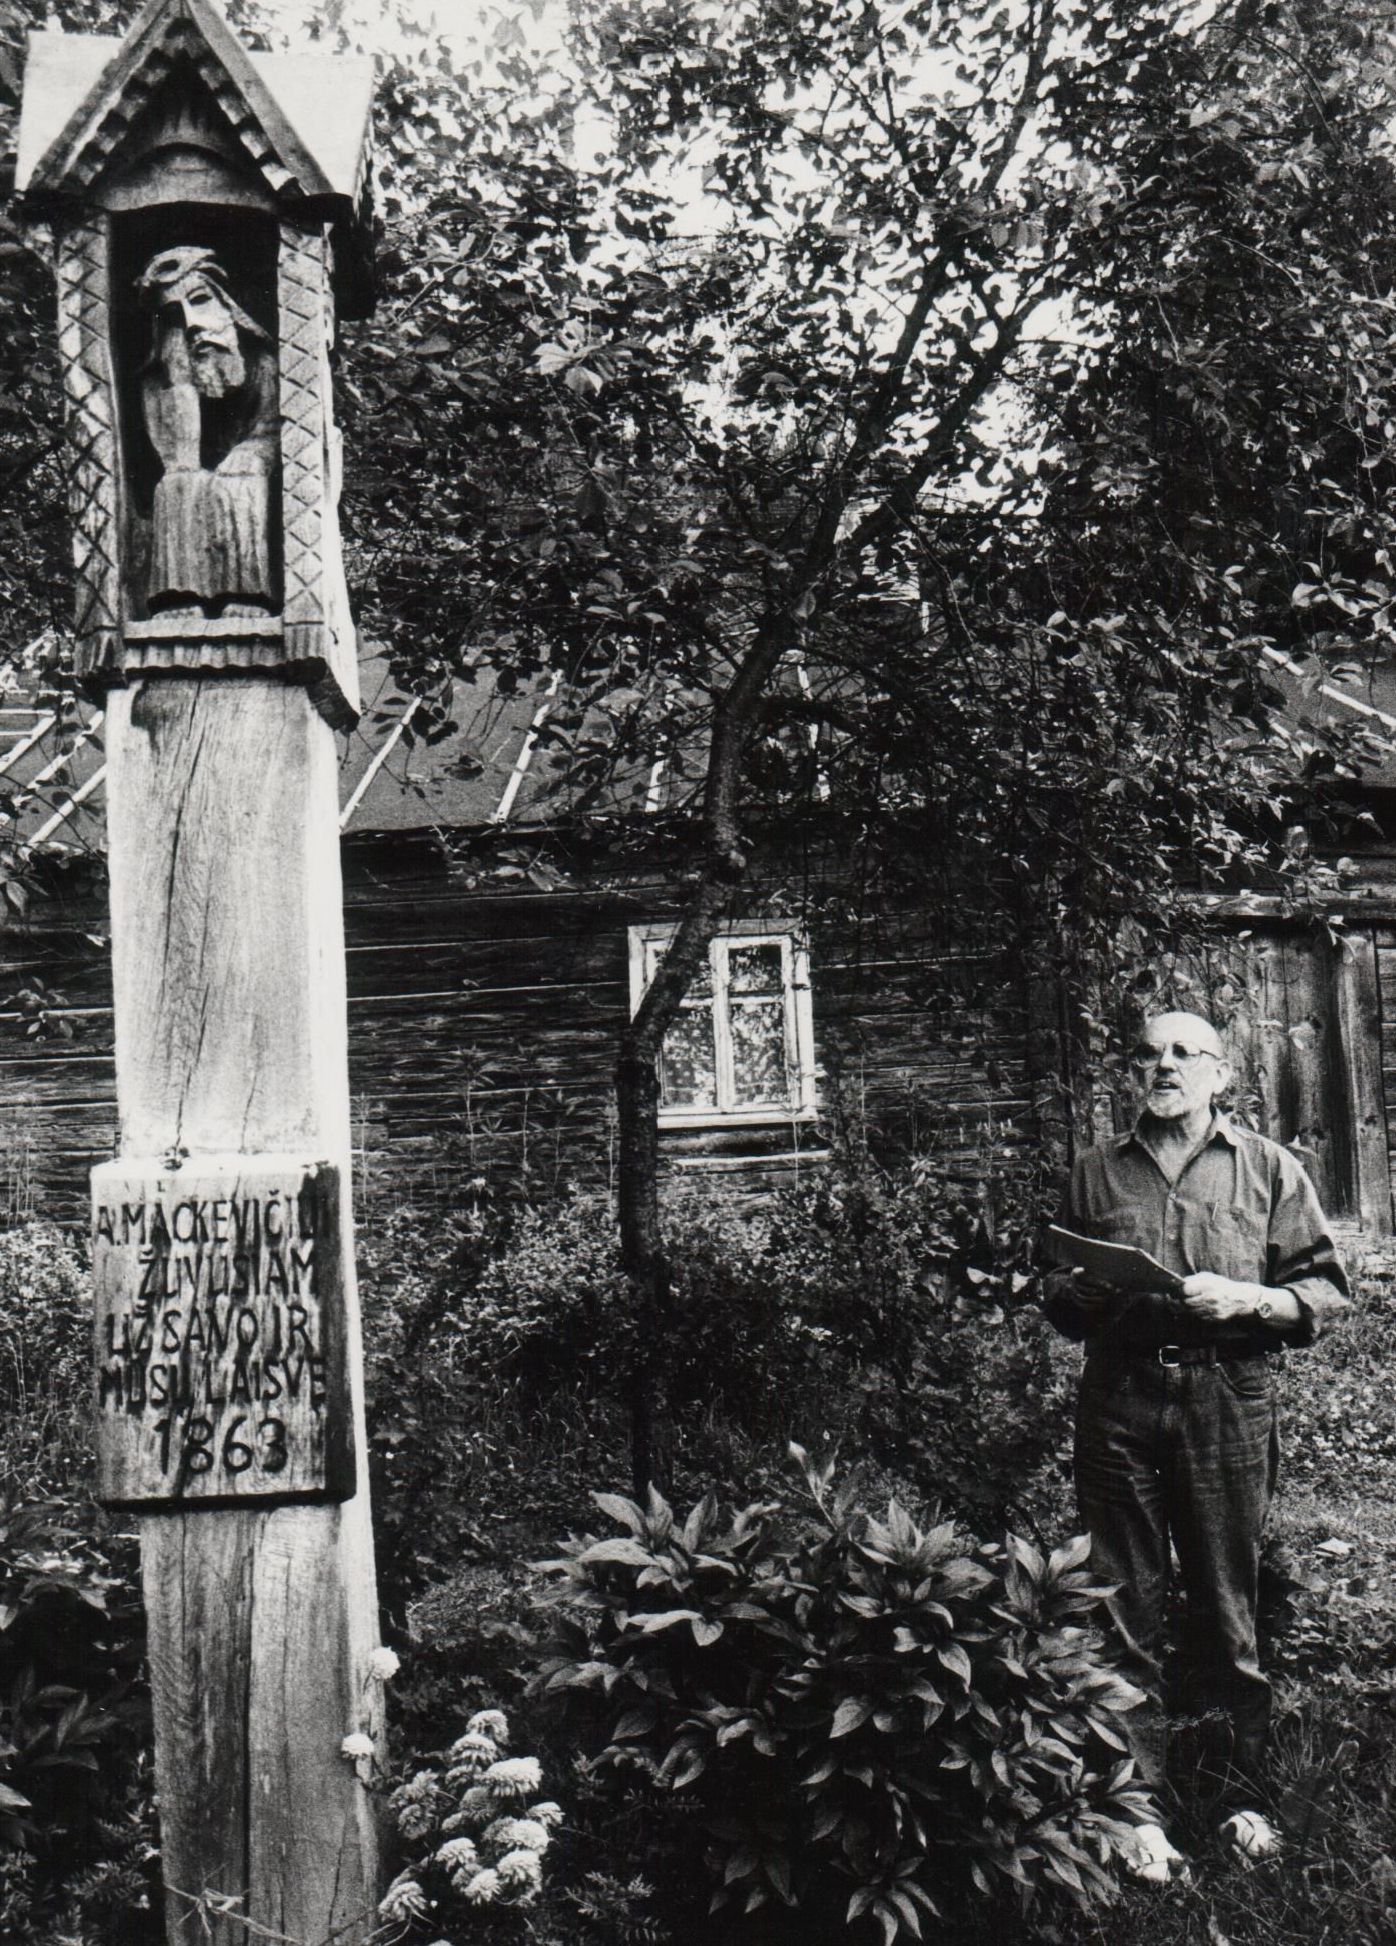 G. Ilgūnas buvusiems bendradarbiams veda ekskursiją. Prie namo Kauno raj. Ringovės kaime, kuriame buvo užkluptas ir netoliese suimtas 1863 m. sukilimo vadas A. Mackevičius. 1997 m. birželio 28 d.